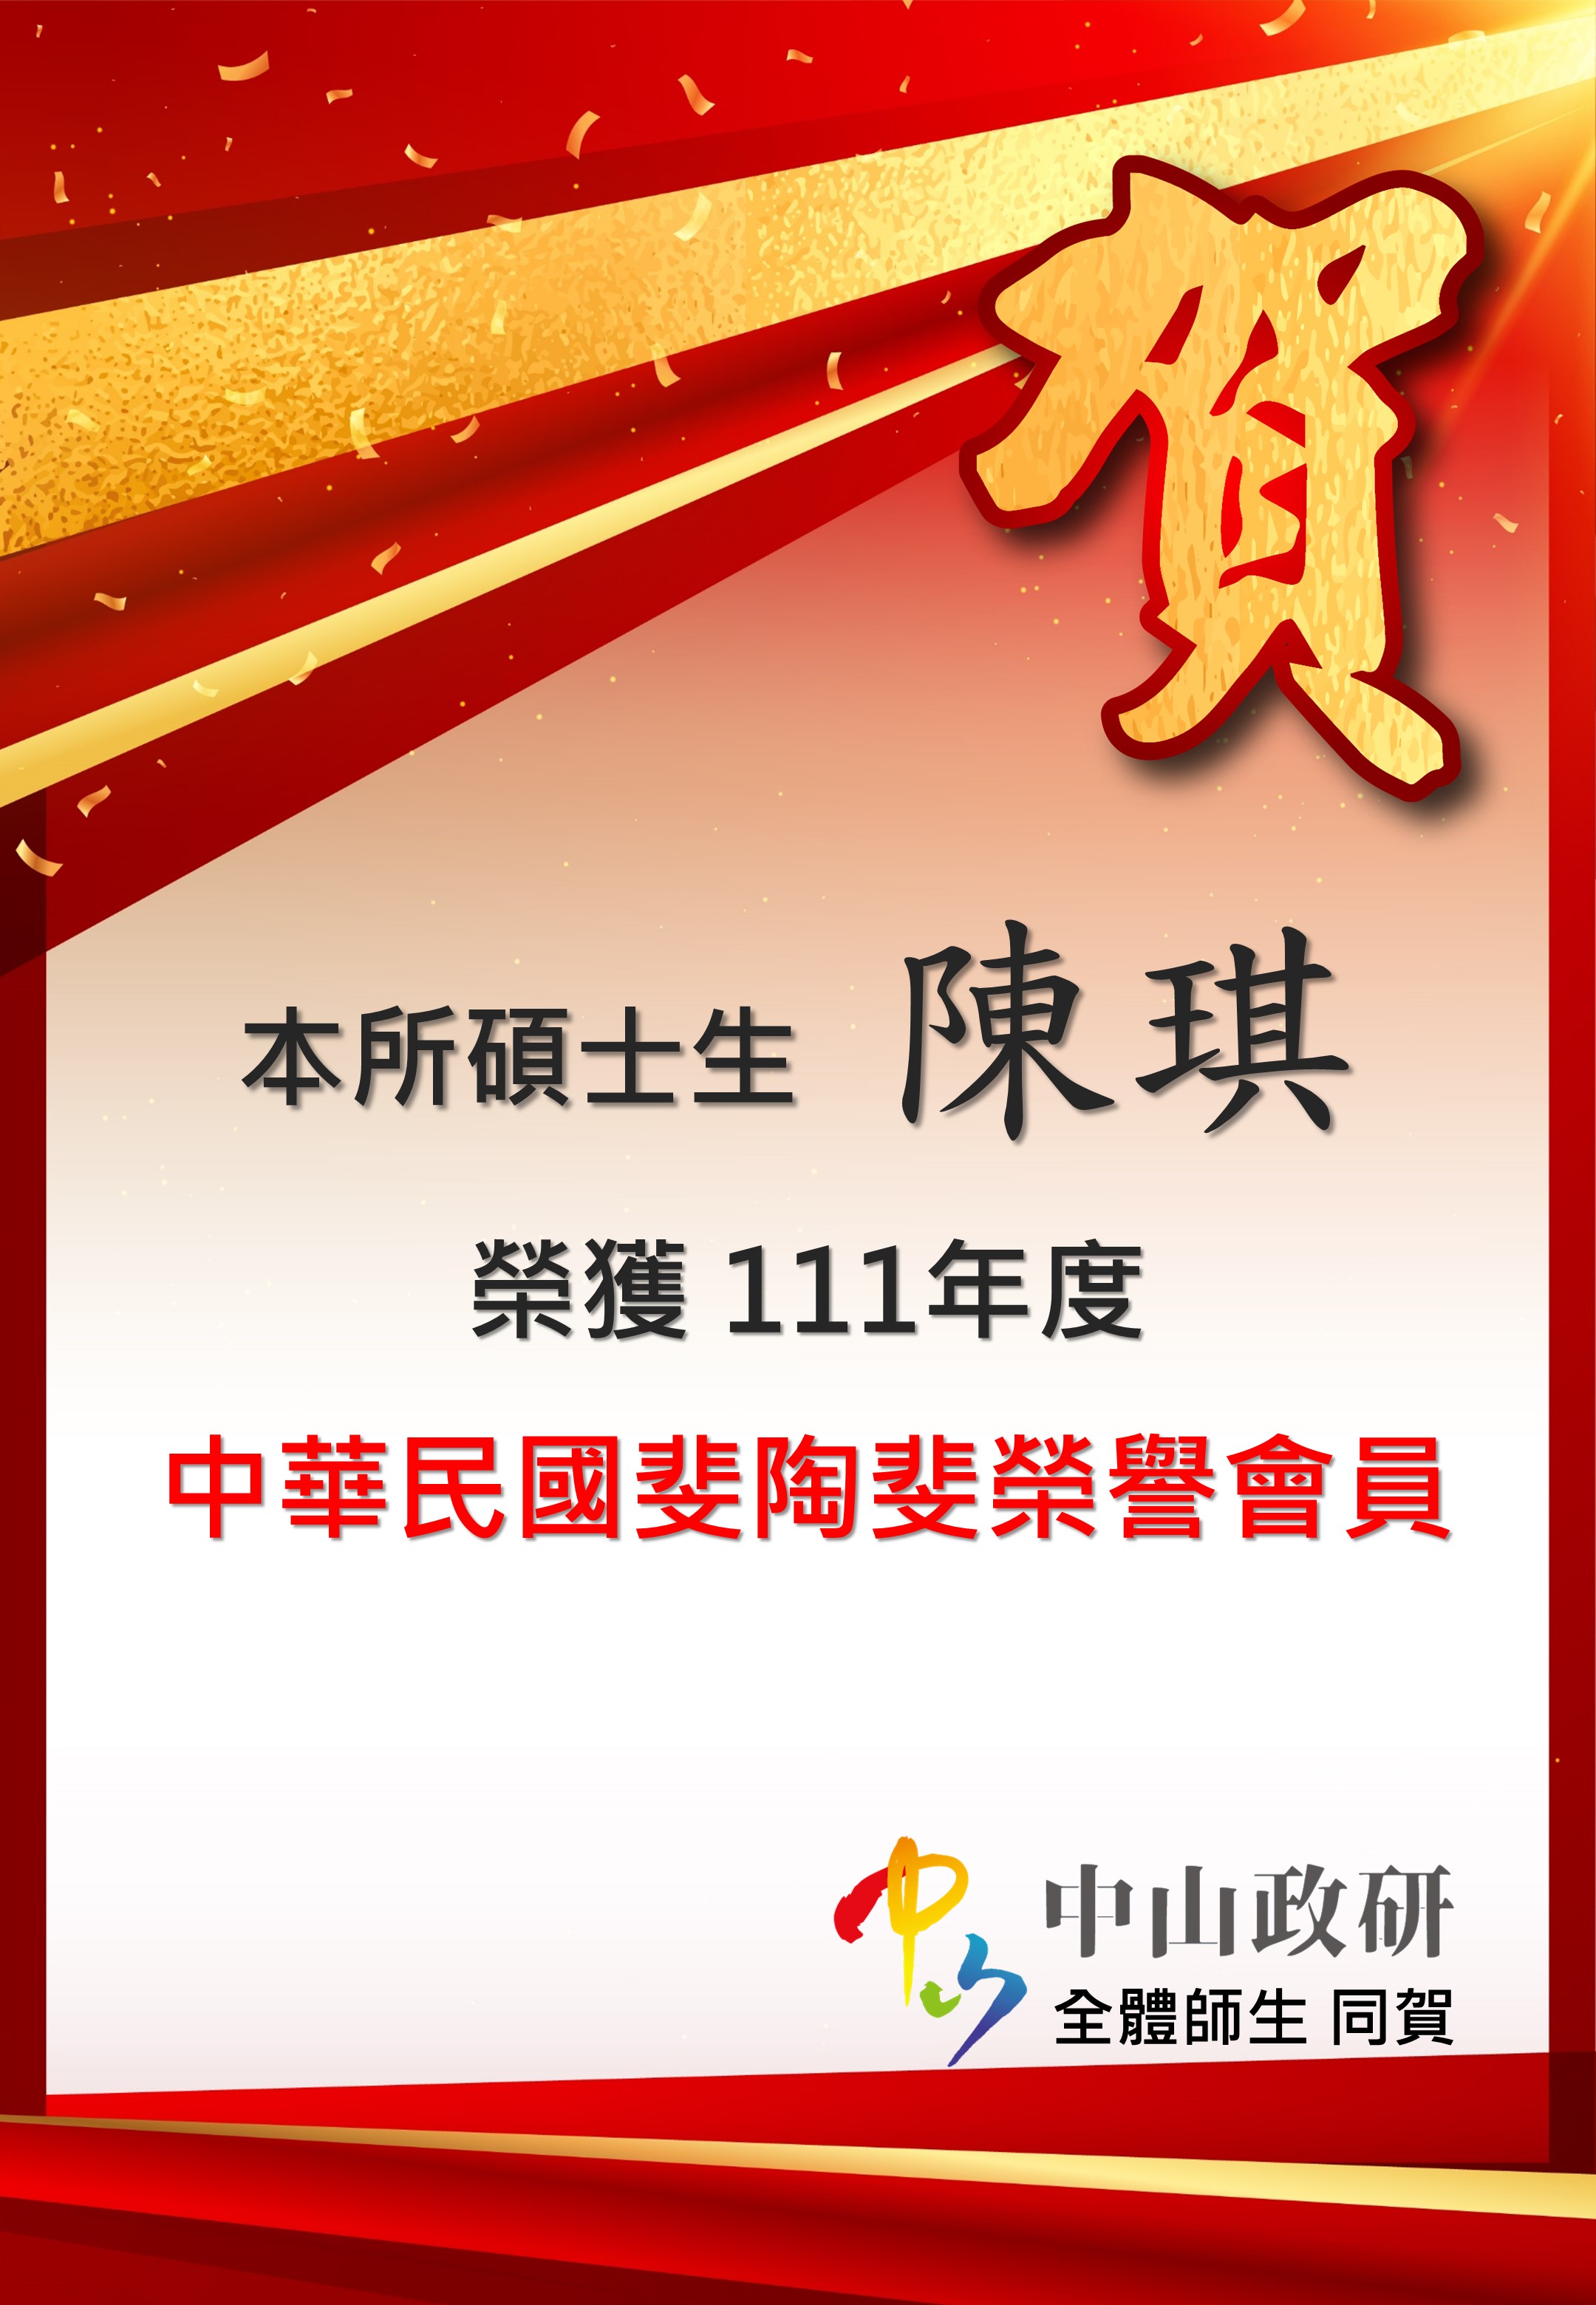 恭賀本所碩士生榮獲111年度中華民國斐陶斐榮譽會員